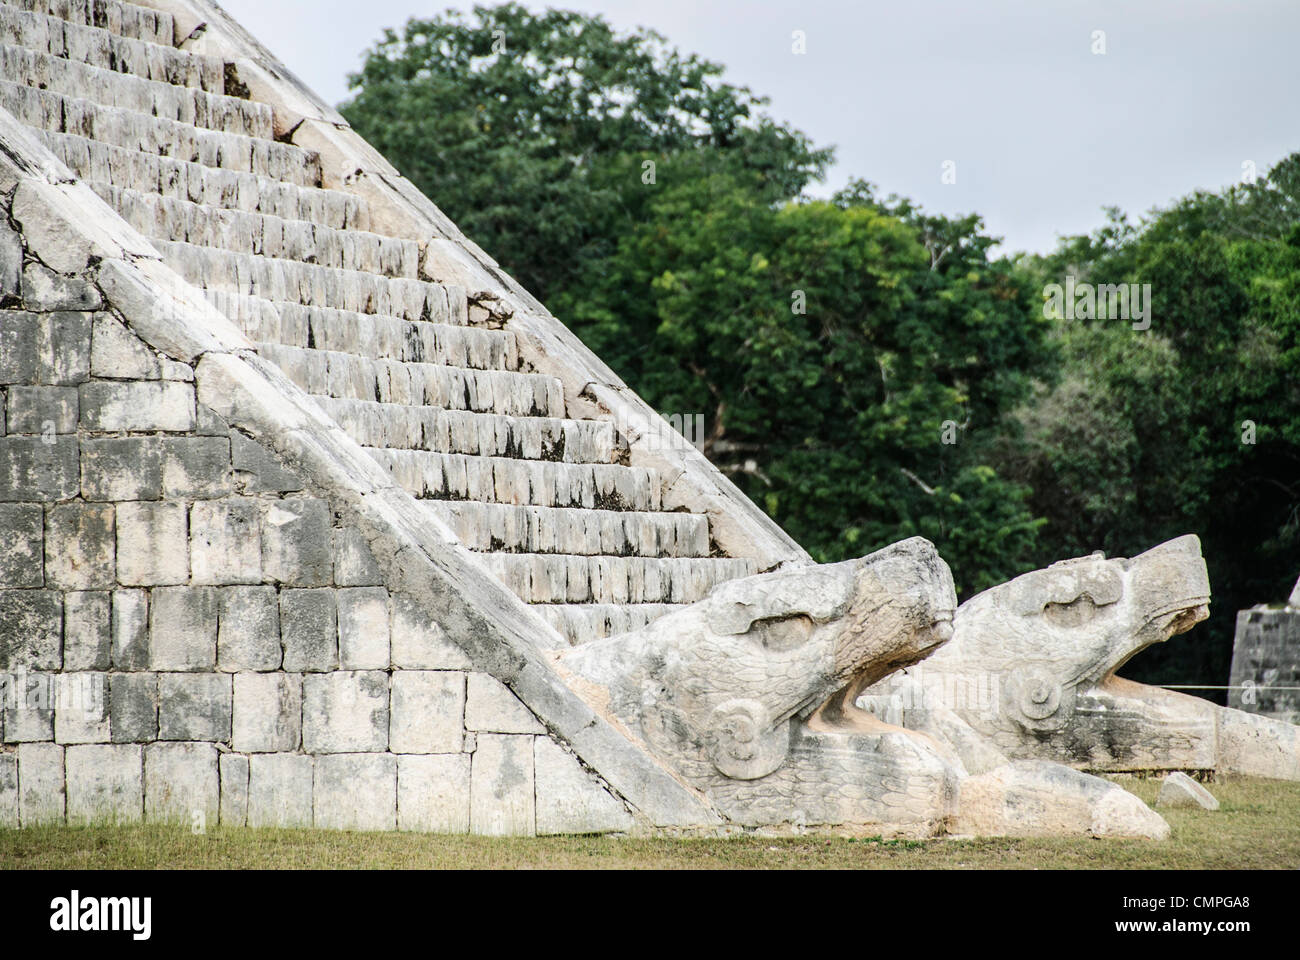 CHICHEN ITZA, Mexique - en bas des escaliers du Temple de Kukulkan (El Castillo) à la Zone archéologique de Chichen Itza, les ruines d'une importante ville de la civilisation Maya au coeur de la péninsule du Yucatan au Mexique. Banque D'Images